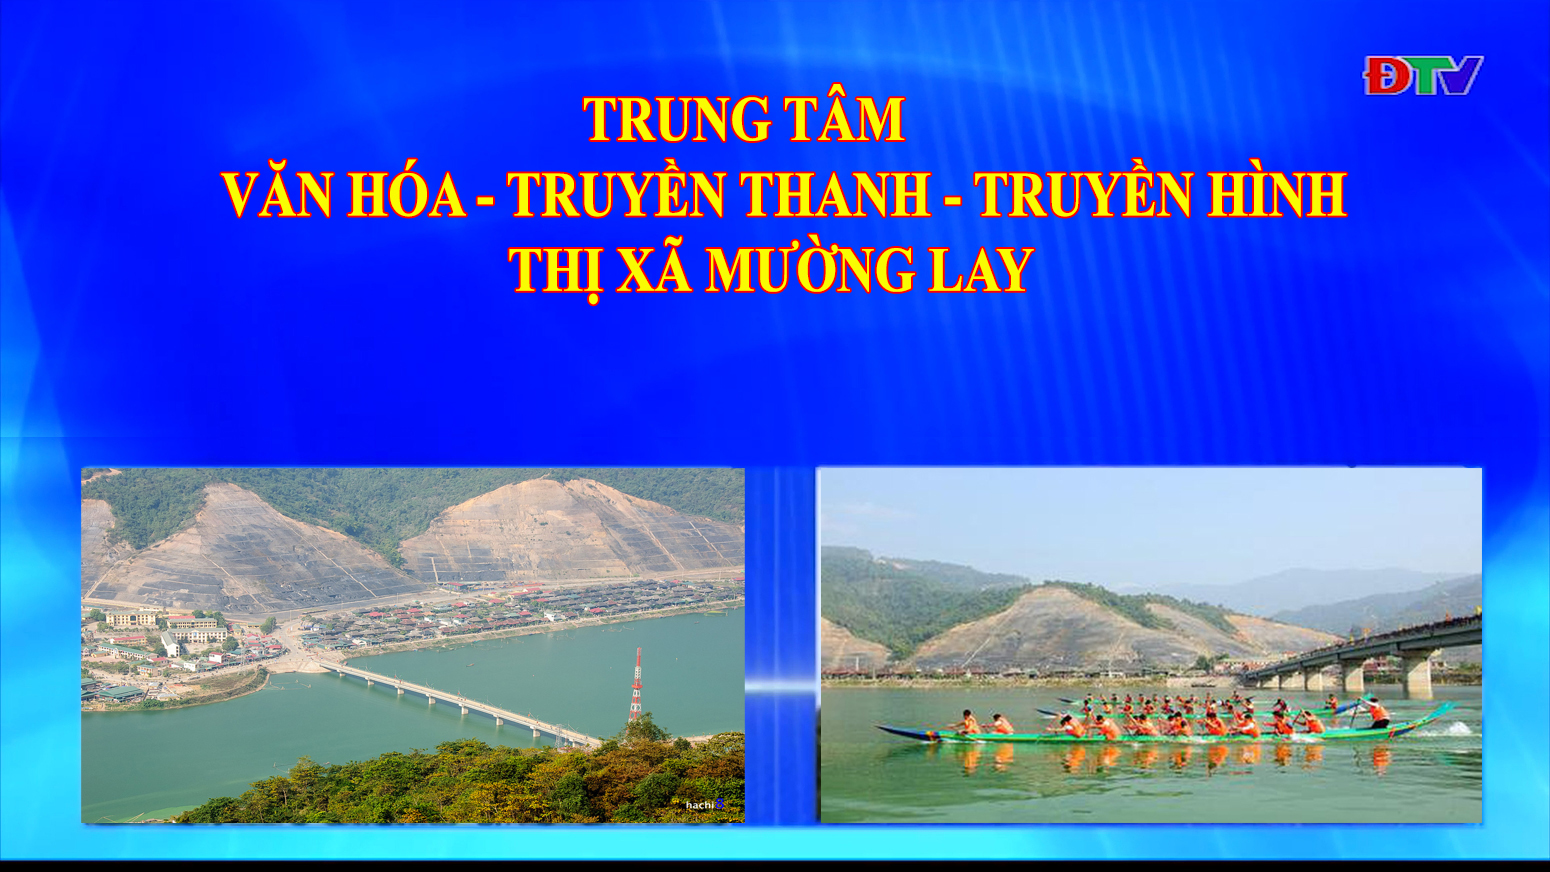 Trung tâm VH-TTTH thị xã Mường Lay (Ngày 6-11-2020)